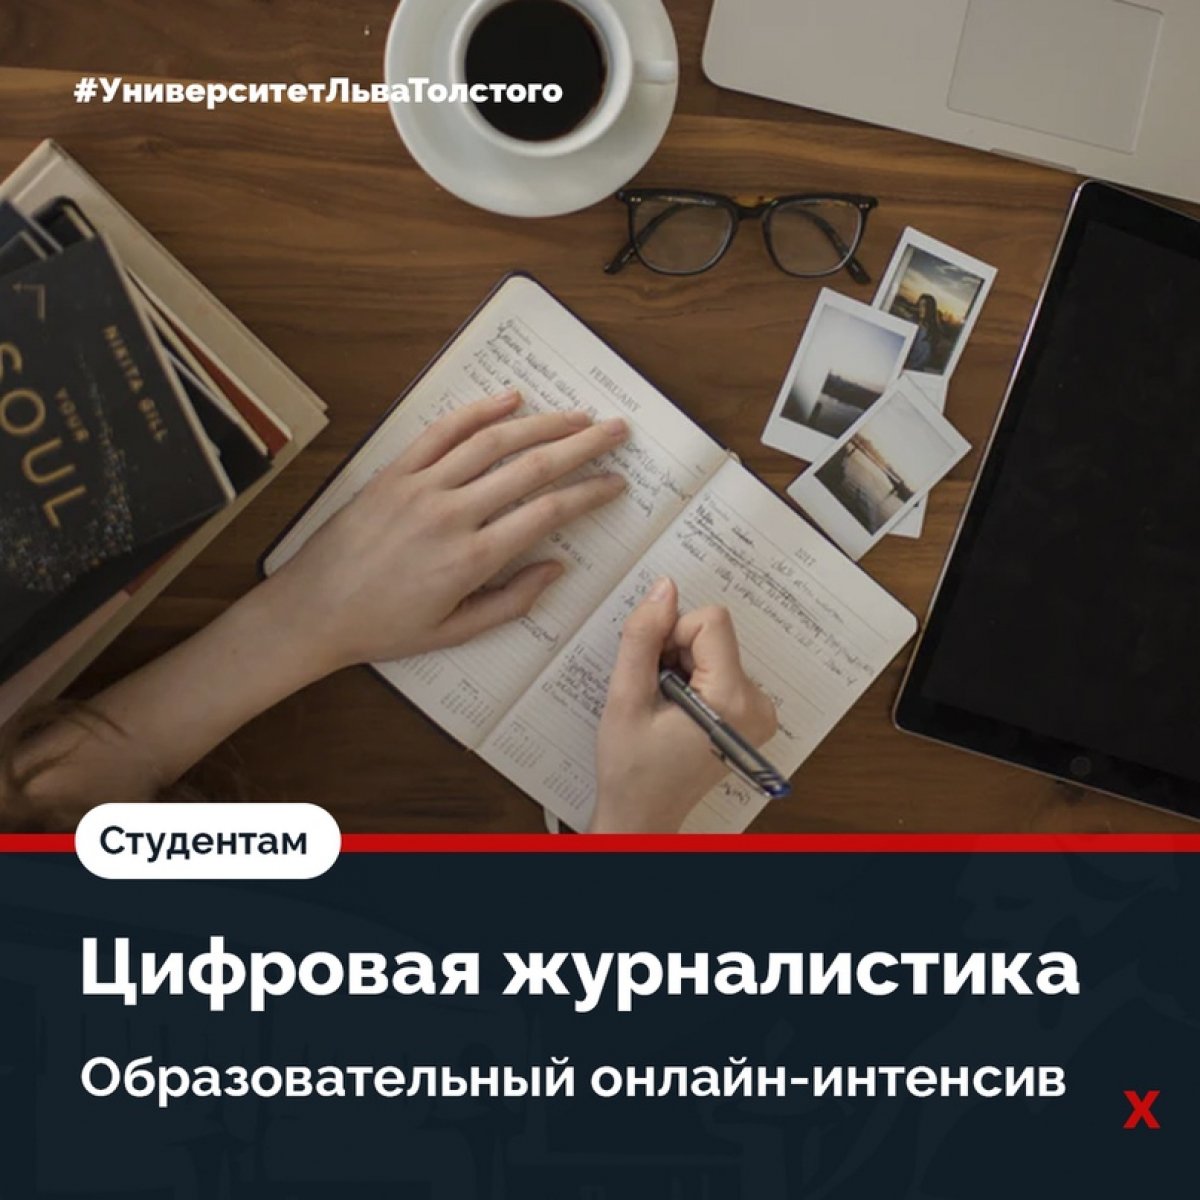 Студентов и выпускников ТГПУ им. Л.Н. Толстого приглашают принять участие во всероссийском образовательном проекте «Цифровая журналистика»✍